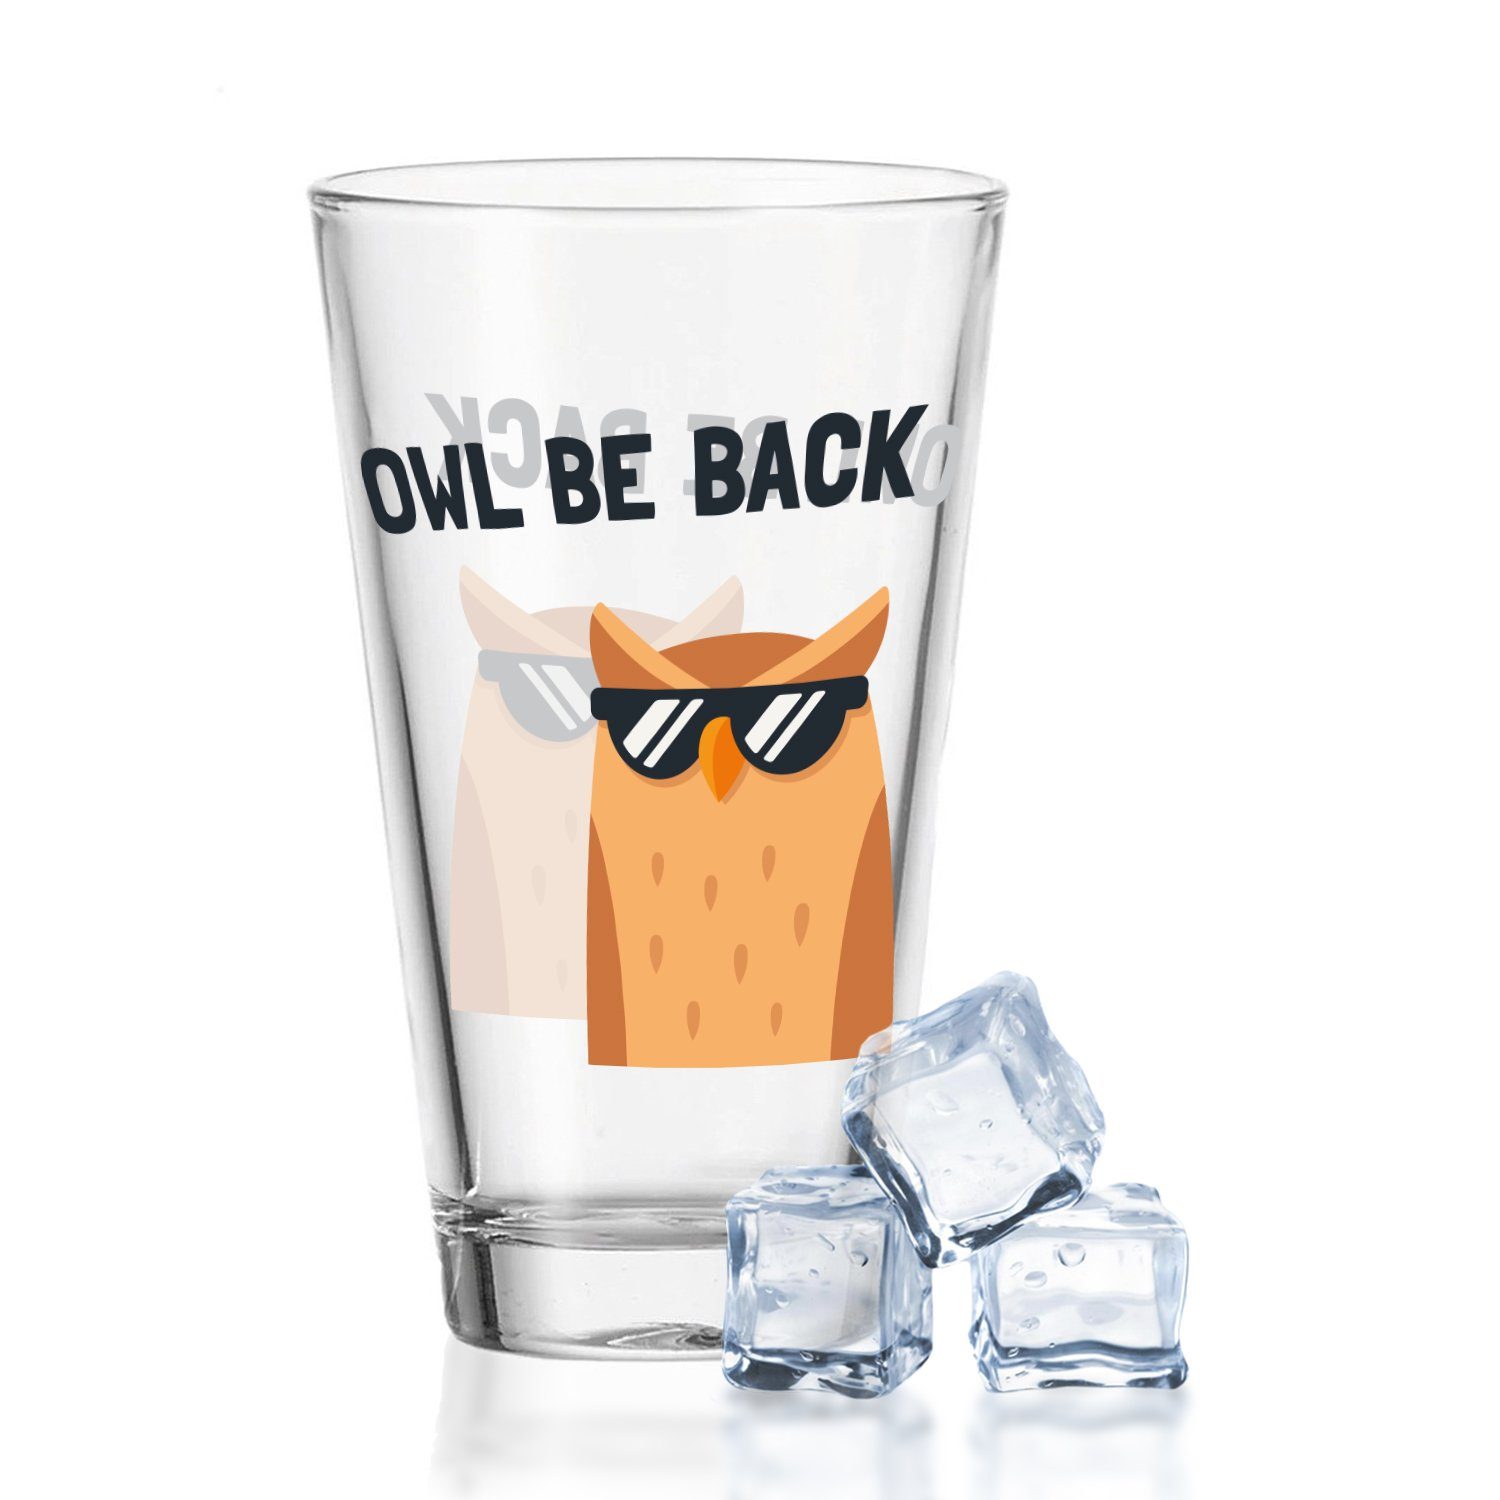 GRAVURZEILE Glas Wasserglas mit UV-Druck - im Owl be back Design -, Glas